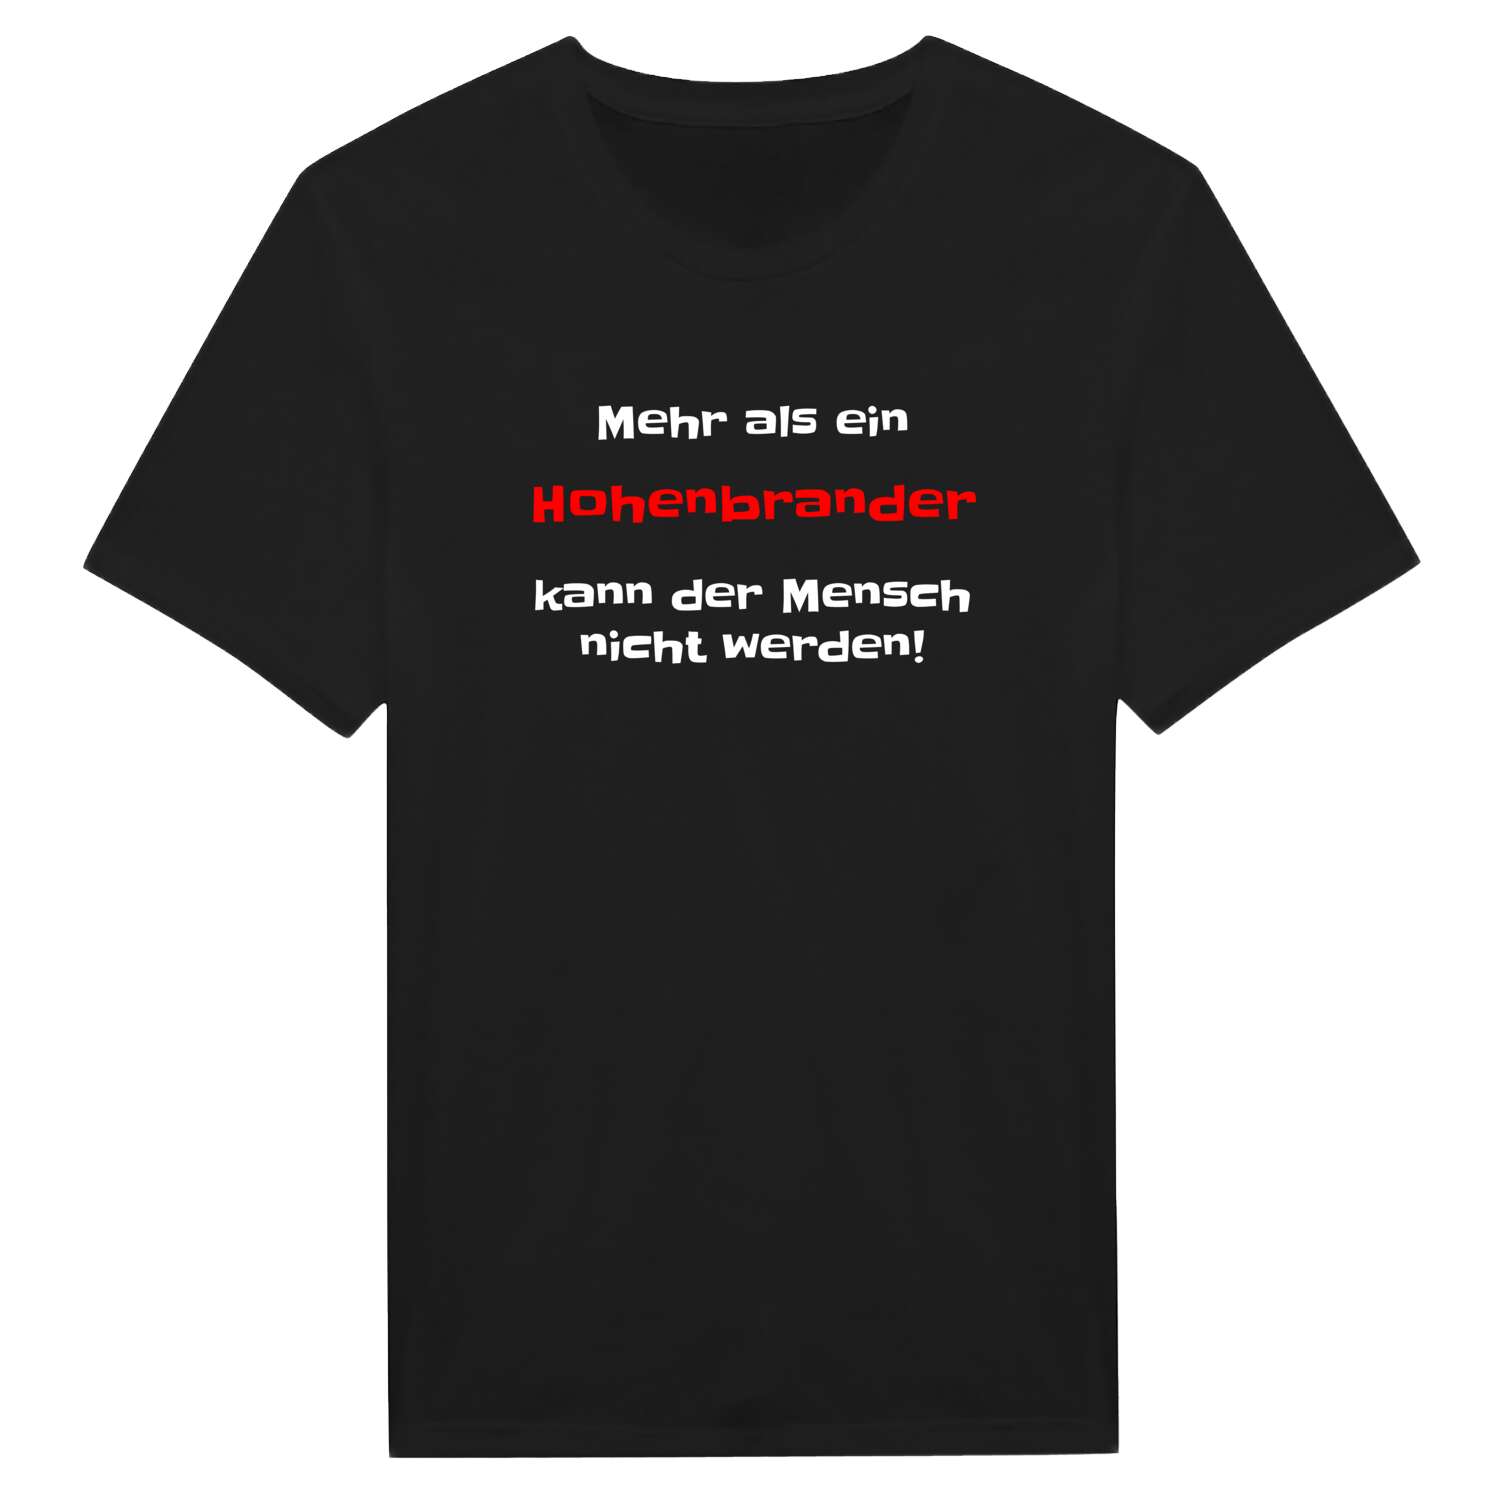 Hohenbrand T-Shirt »Mehr als ein«